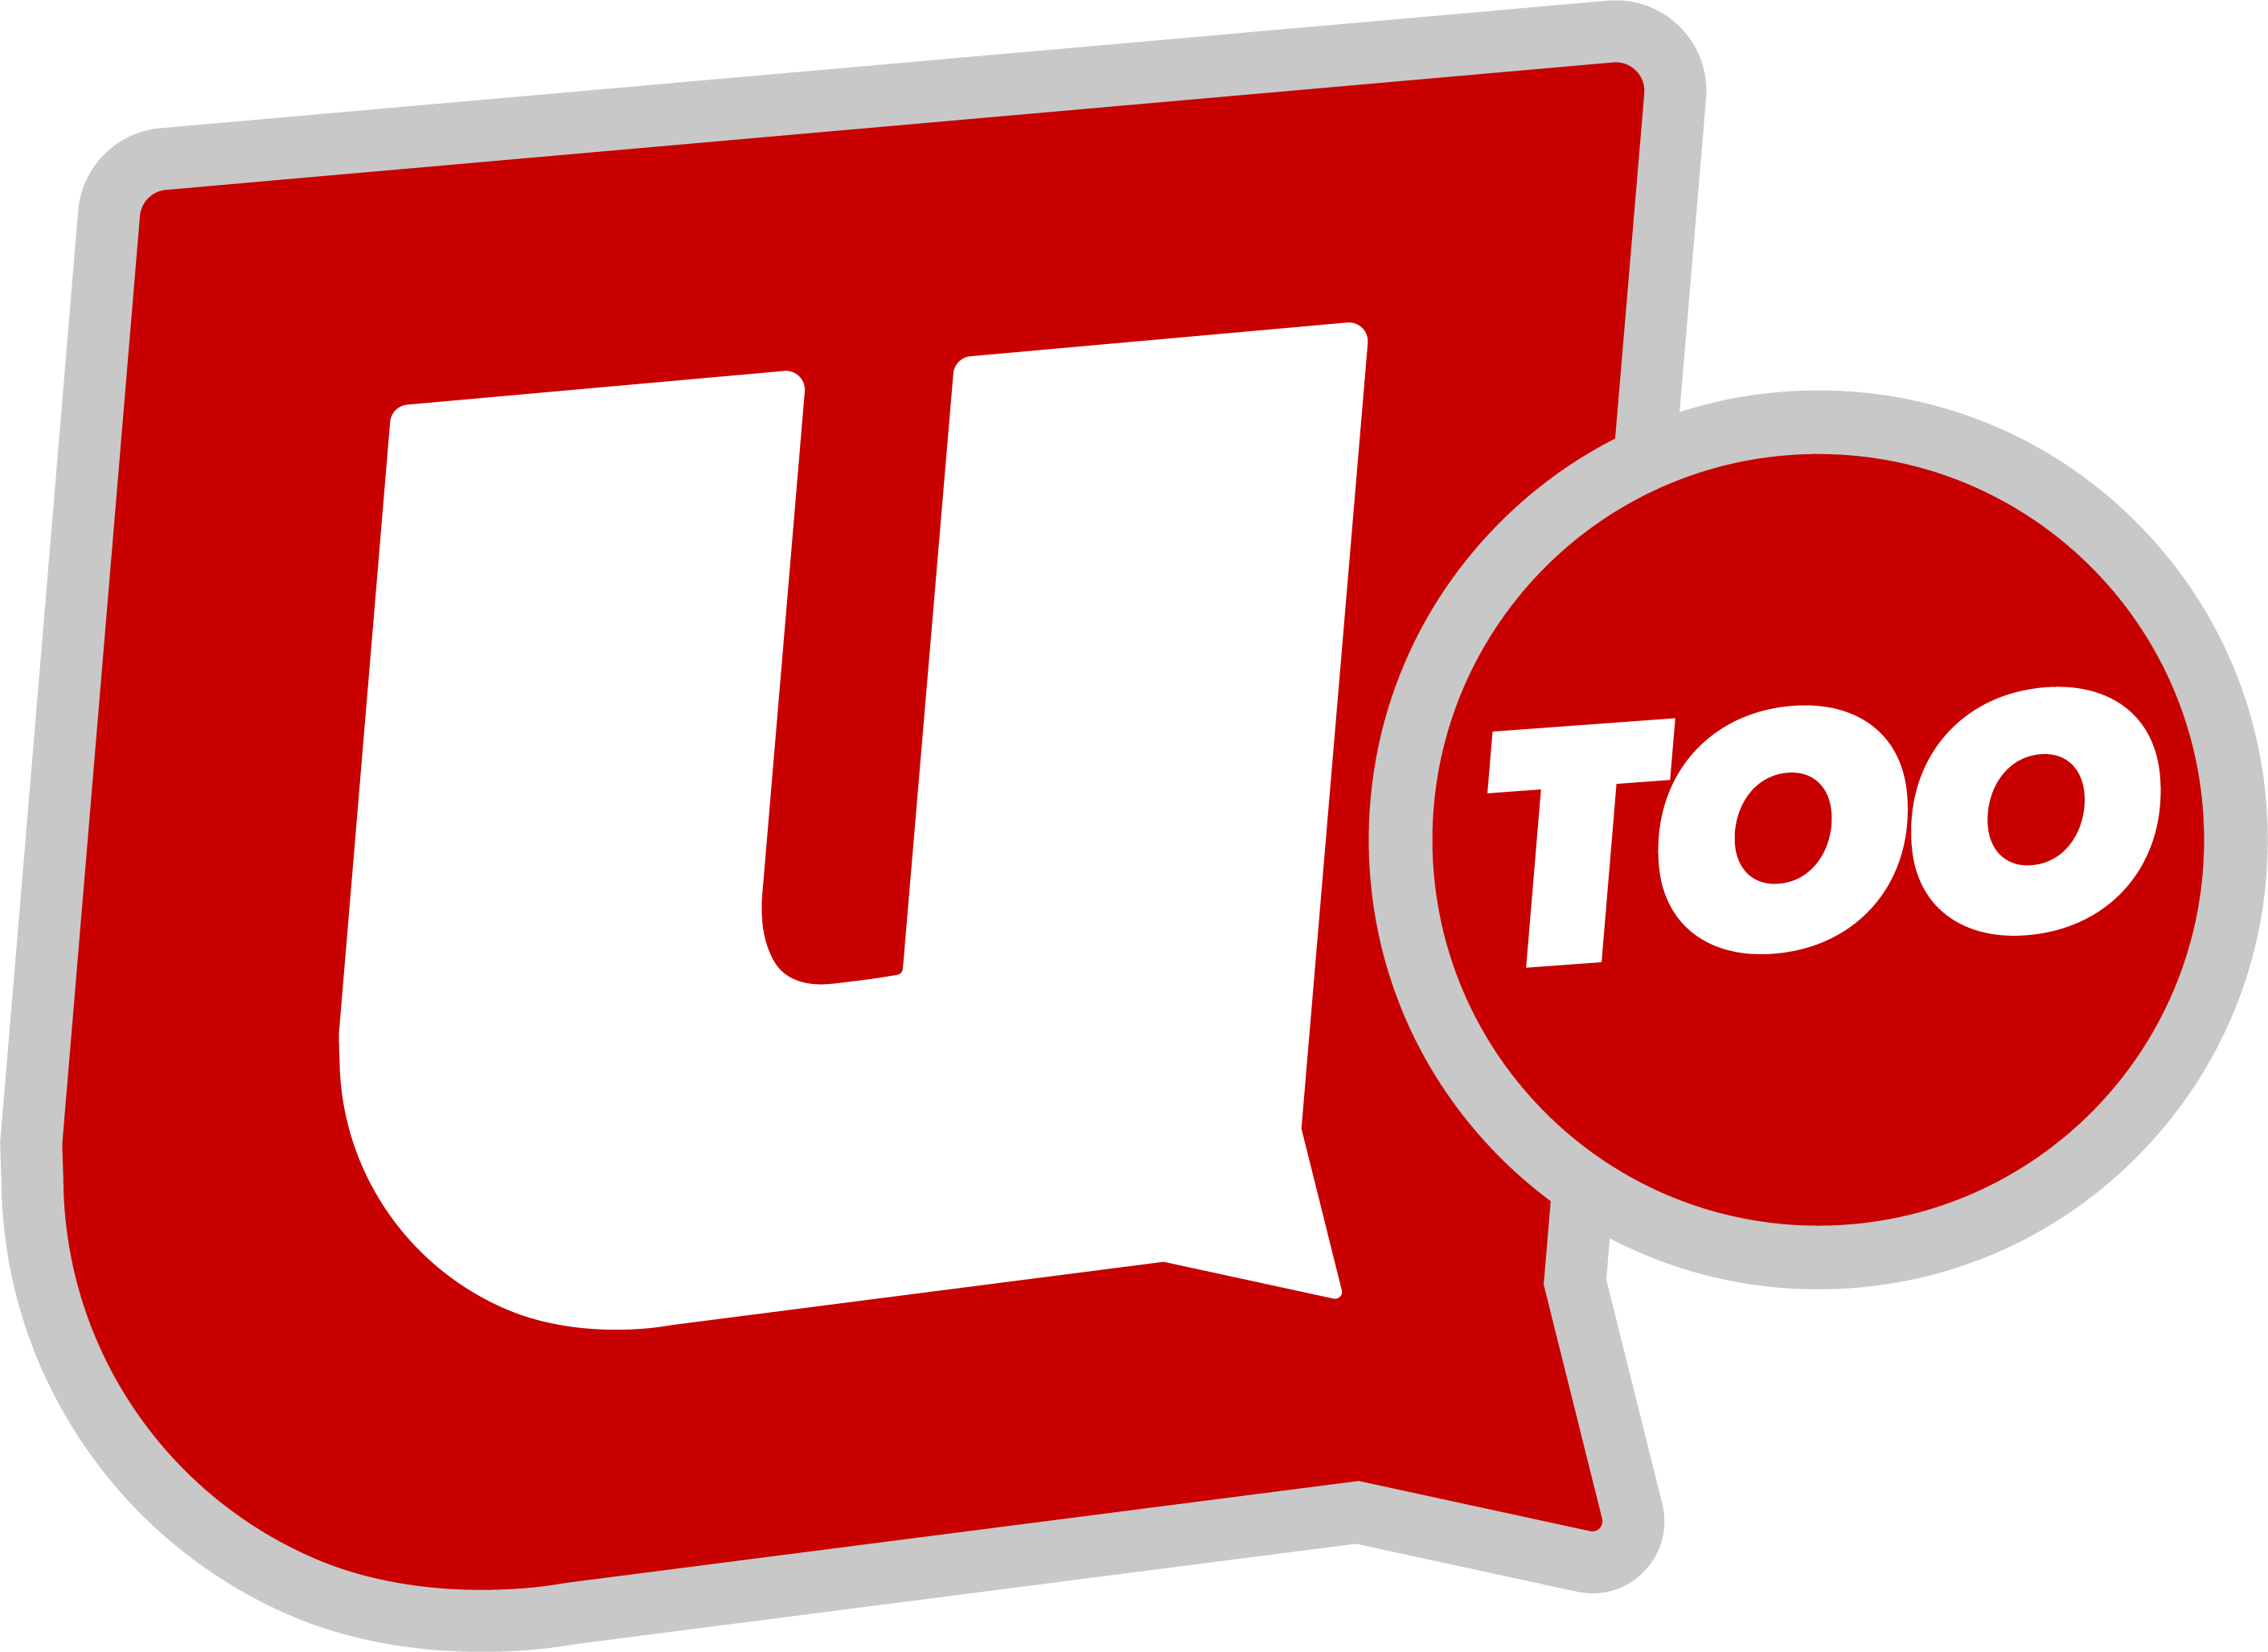 U Too Logo